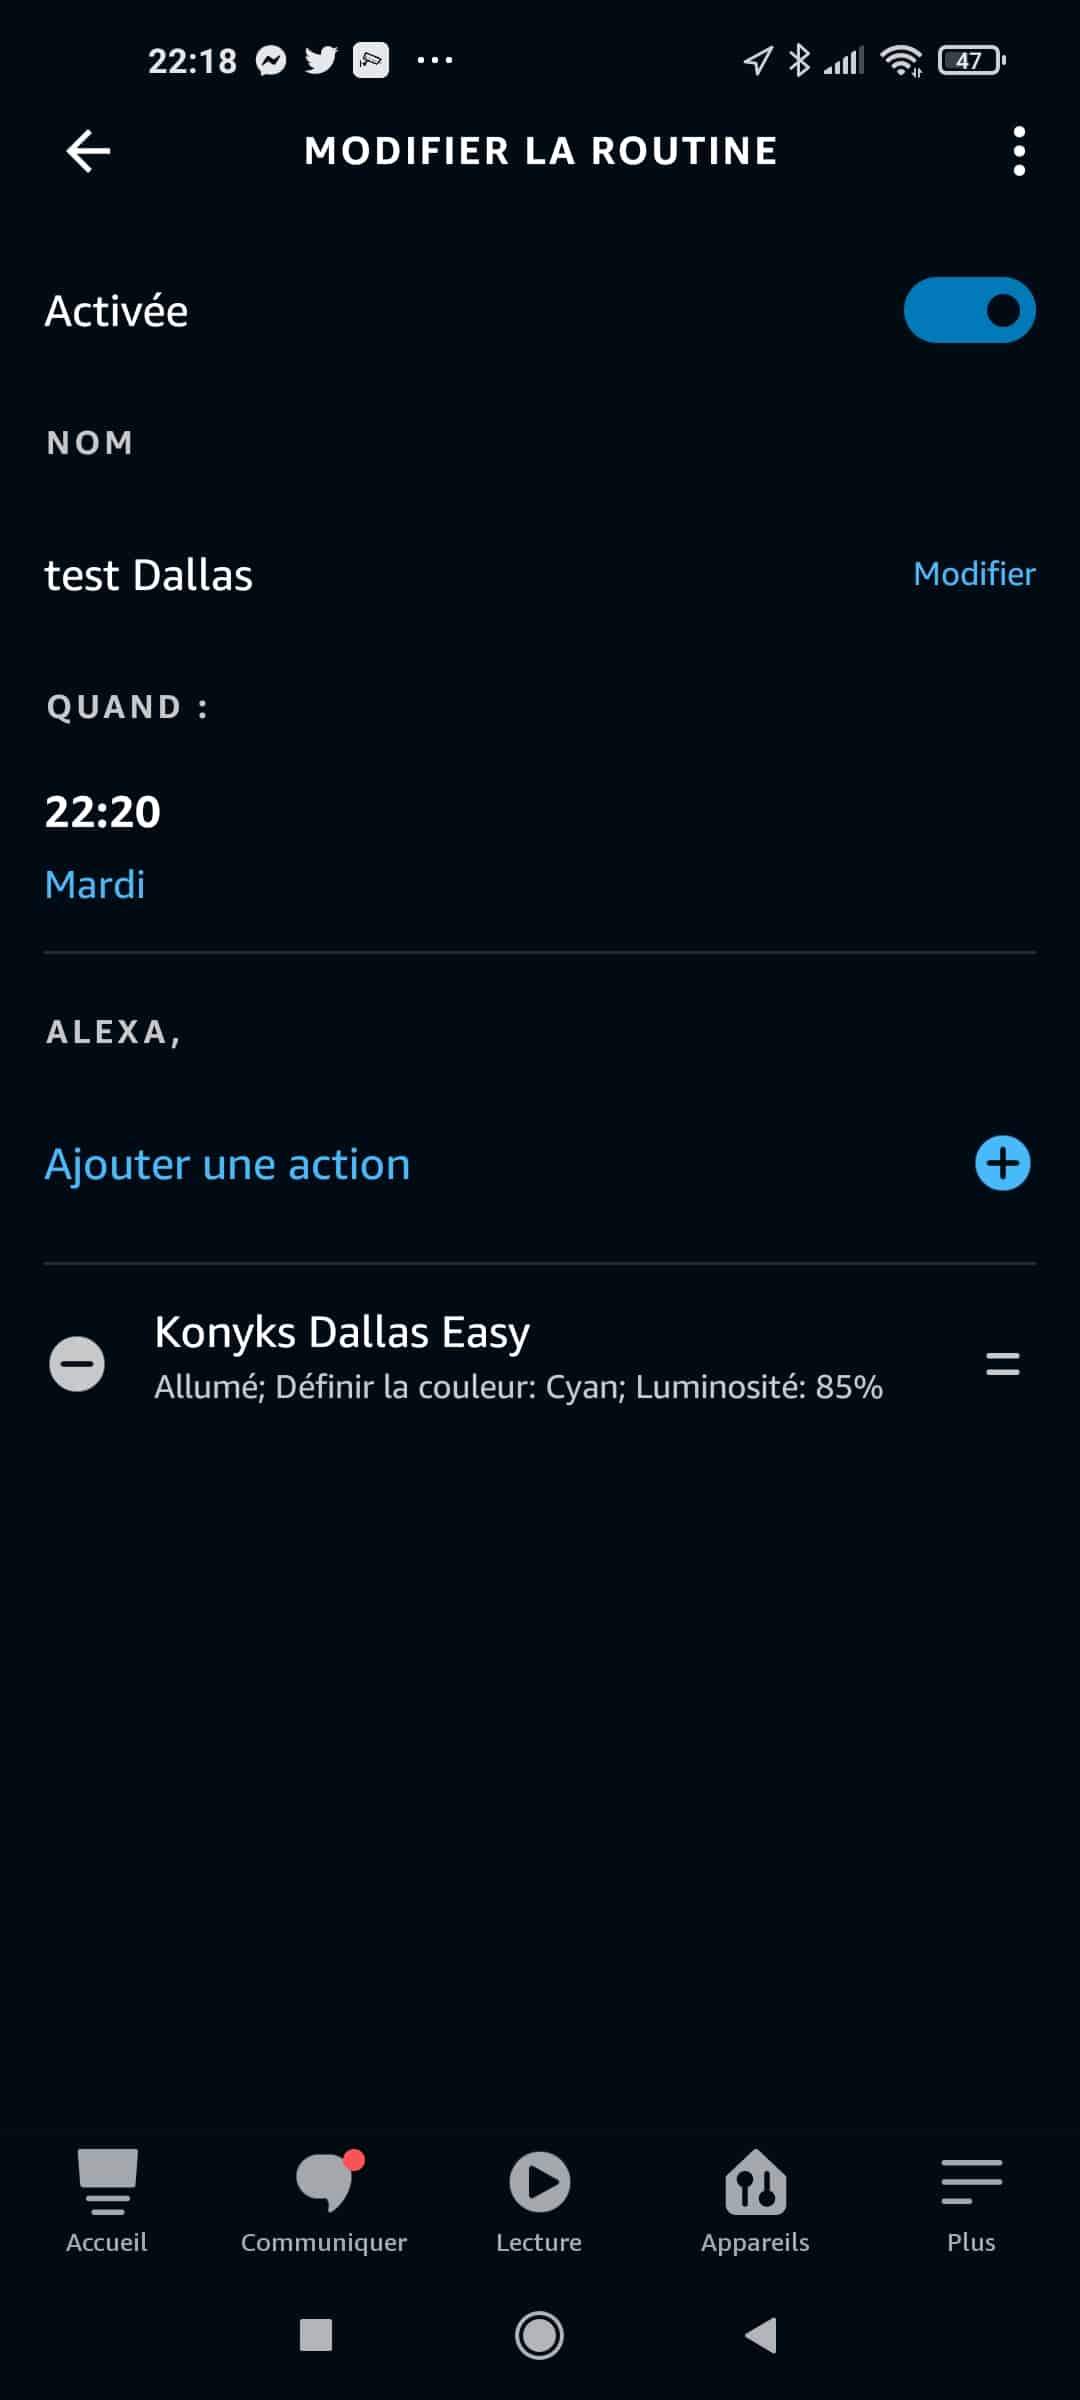 Dallas Easy, ruban LED RGB Blanc réglable Wi-Fi + Bluetooth - Konyks